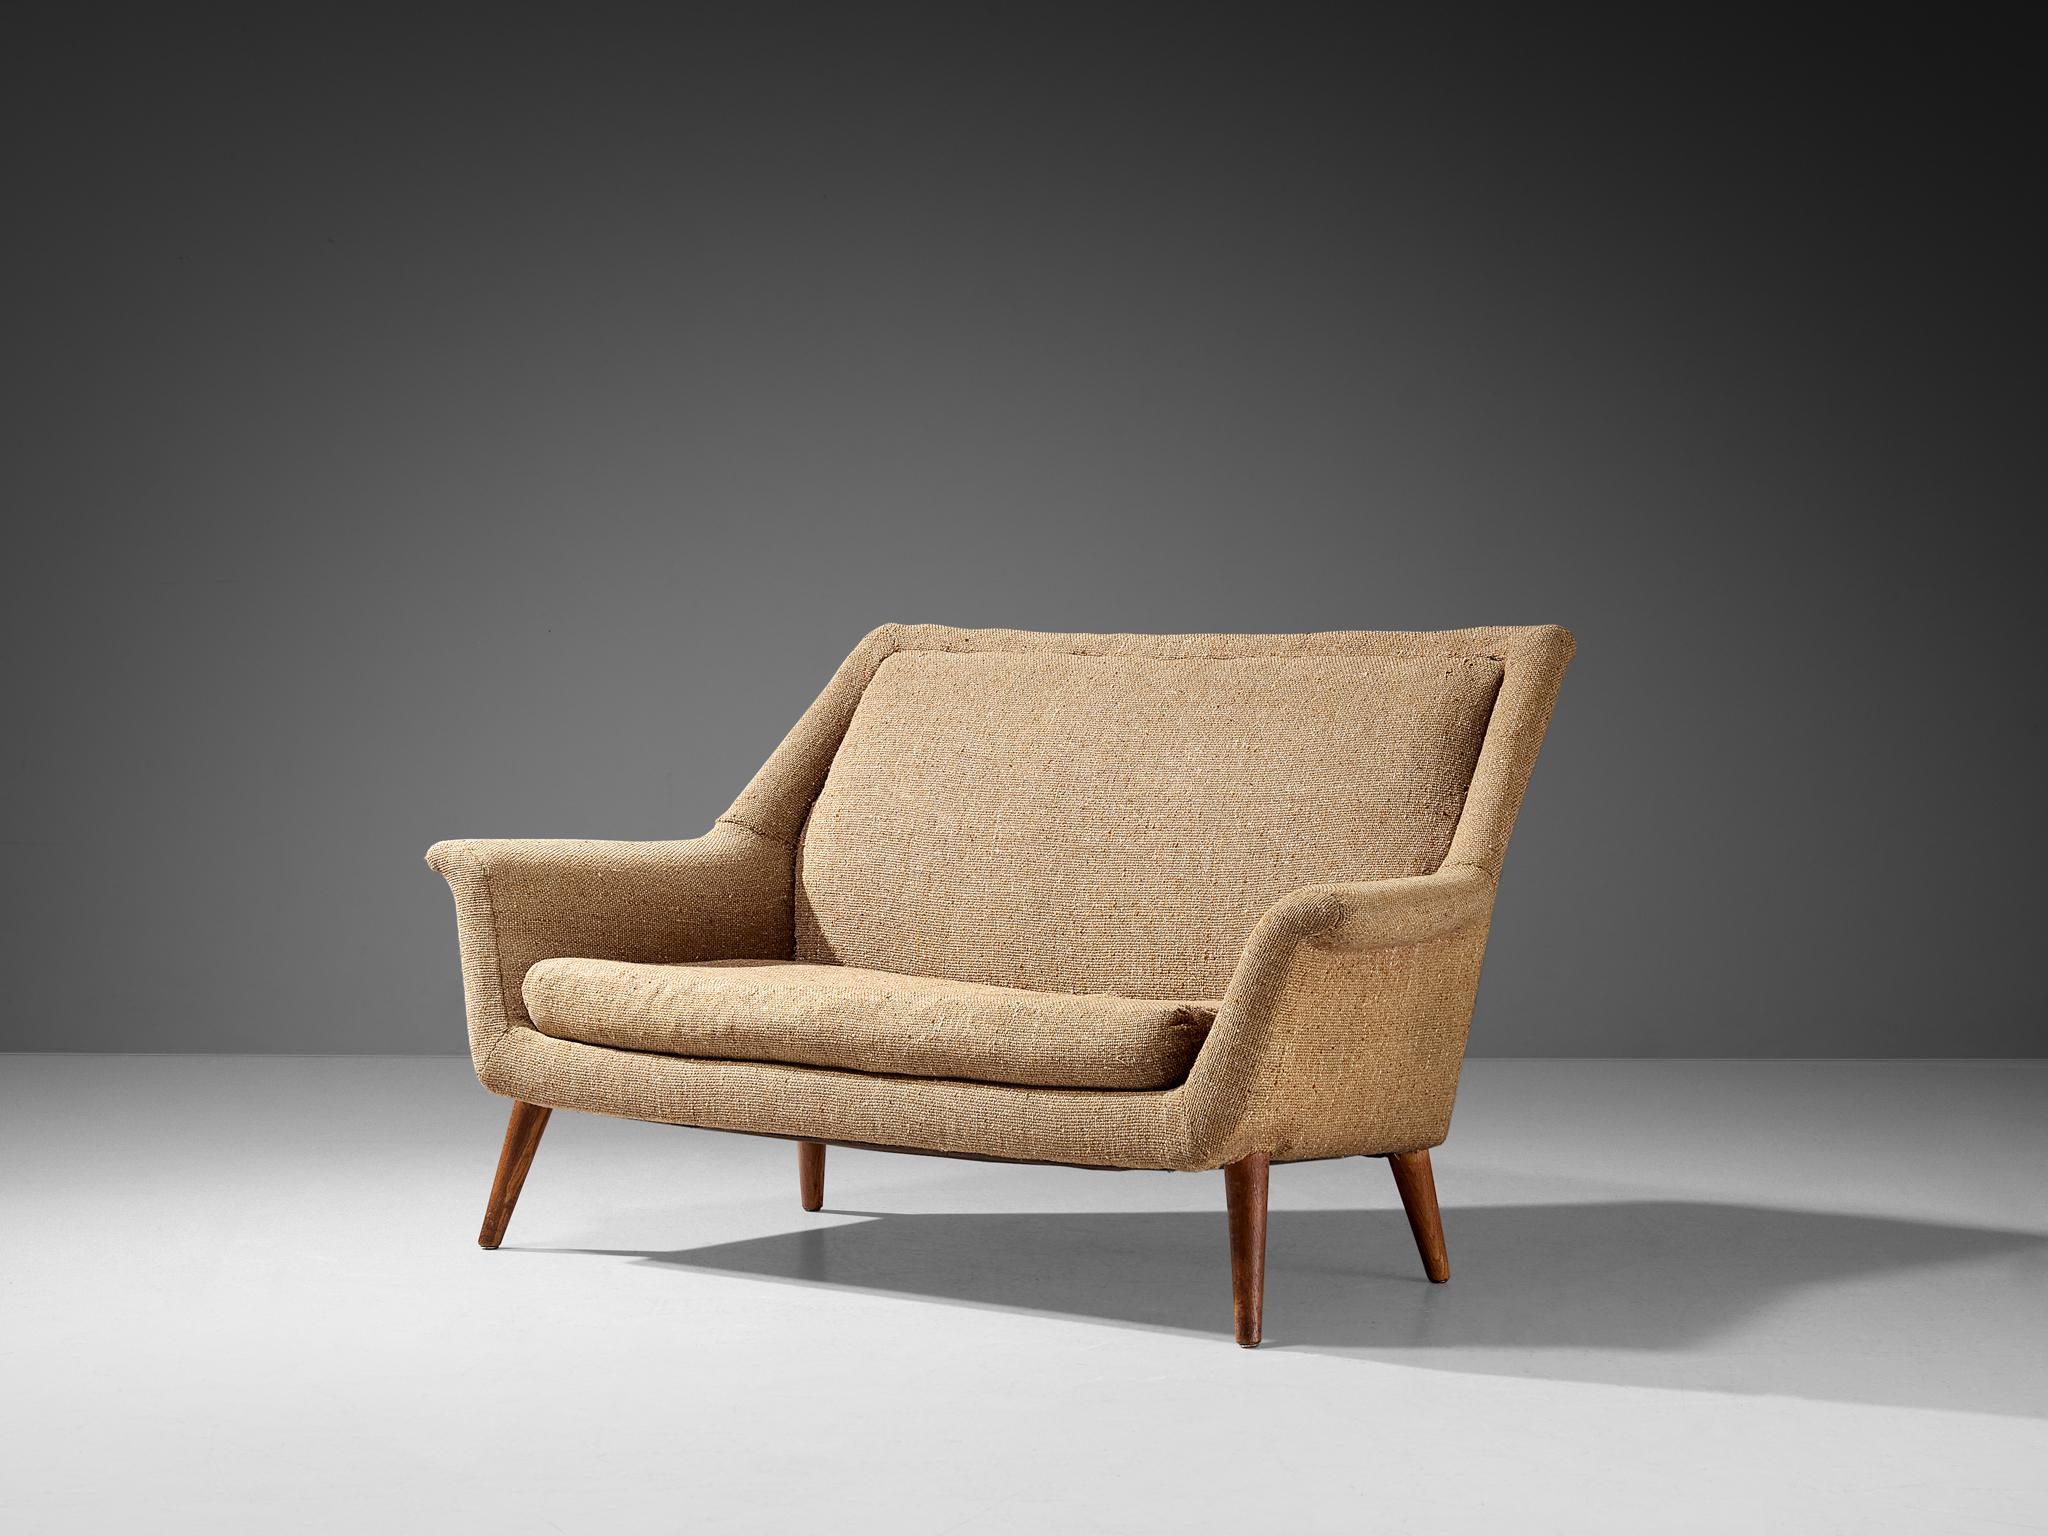 Canapé, laine, teck, Royaume-Uni, années 1960.

Ce canapé a tout le charme et la vitalité d'un meuble typique du milieu du siècle. Un détail agréable est la façon dont le dossier se prolonge en douceur dans les accoudoirs, se développant en forme